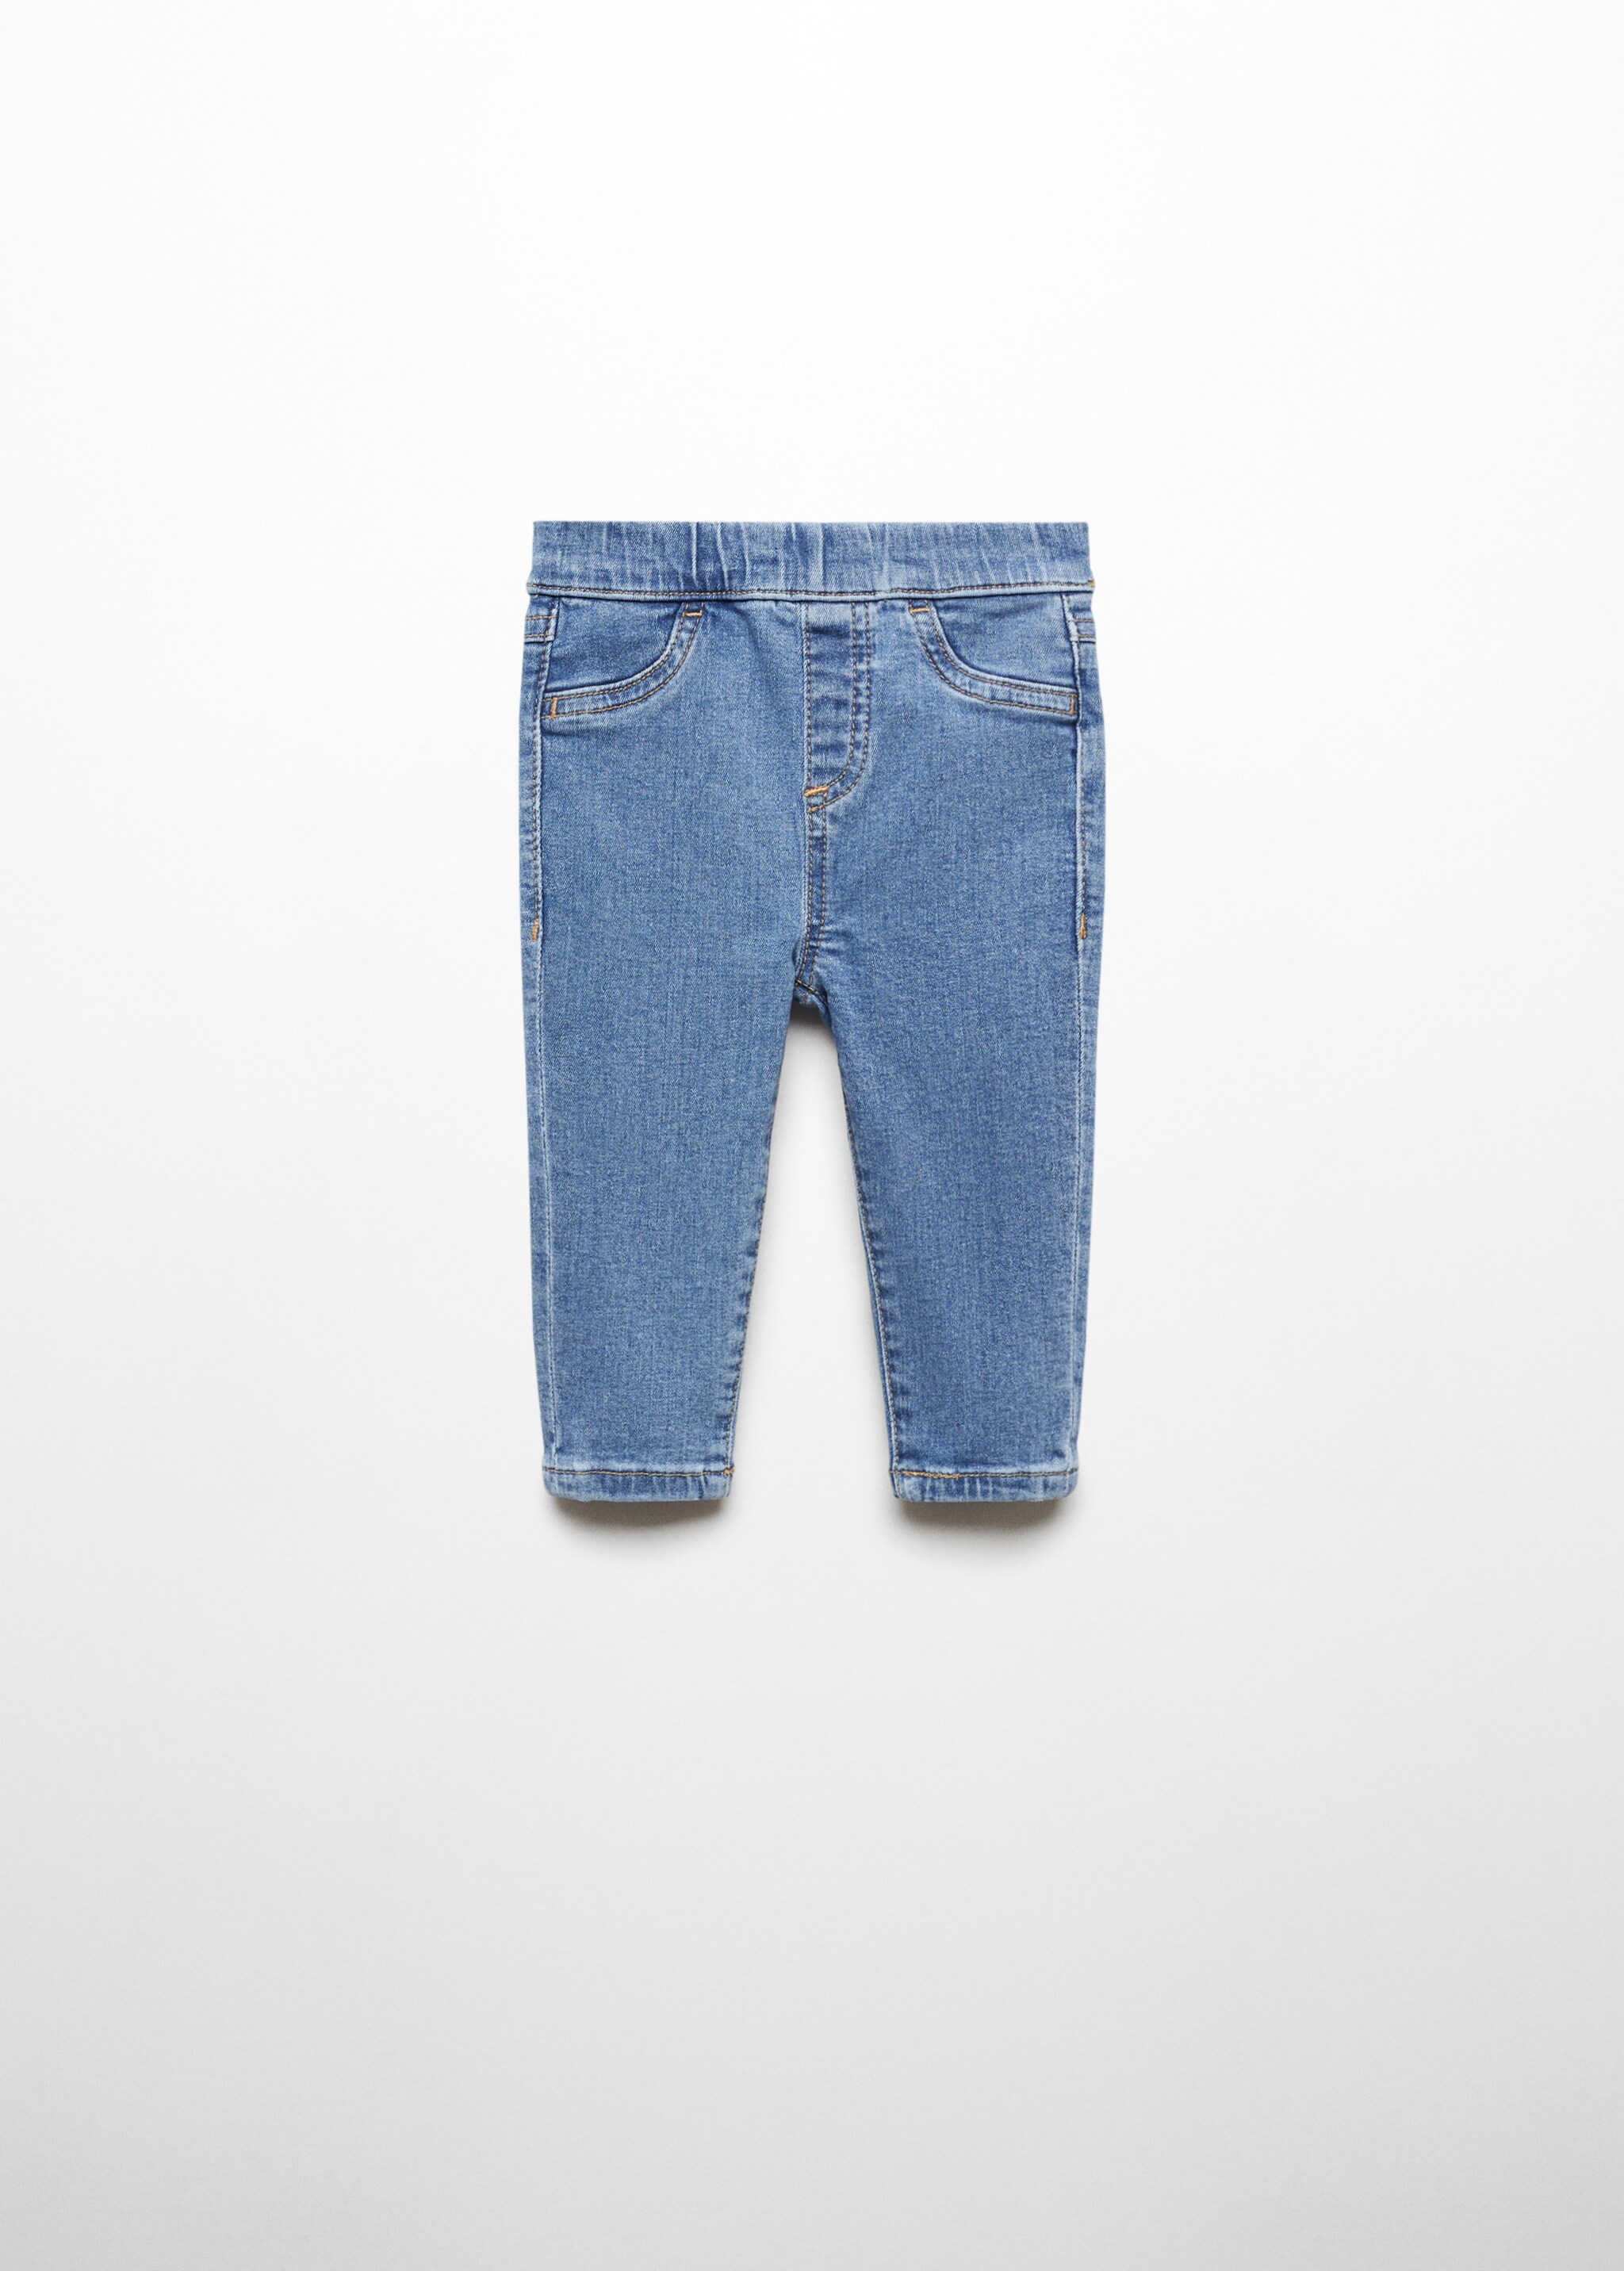 Jeans cintura elástica - Artículo sin modelo